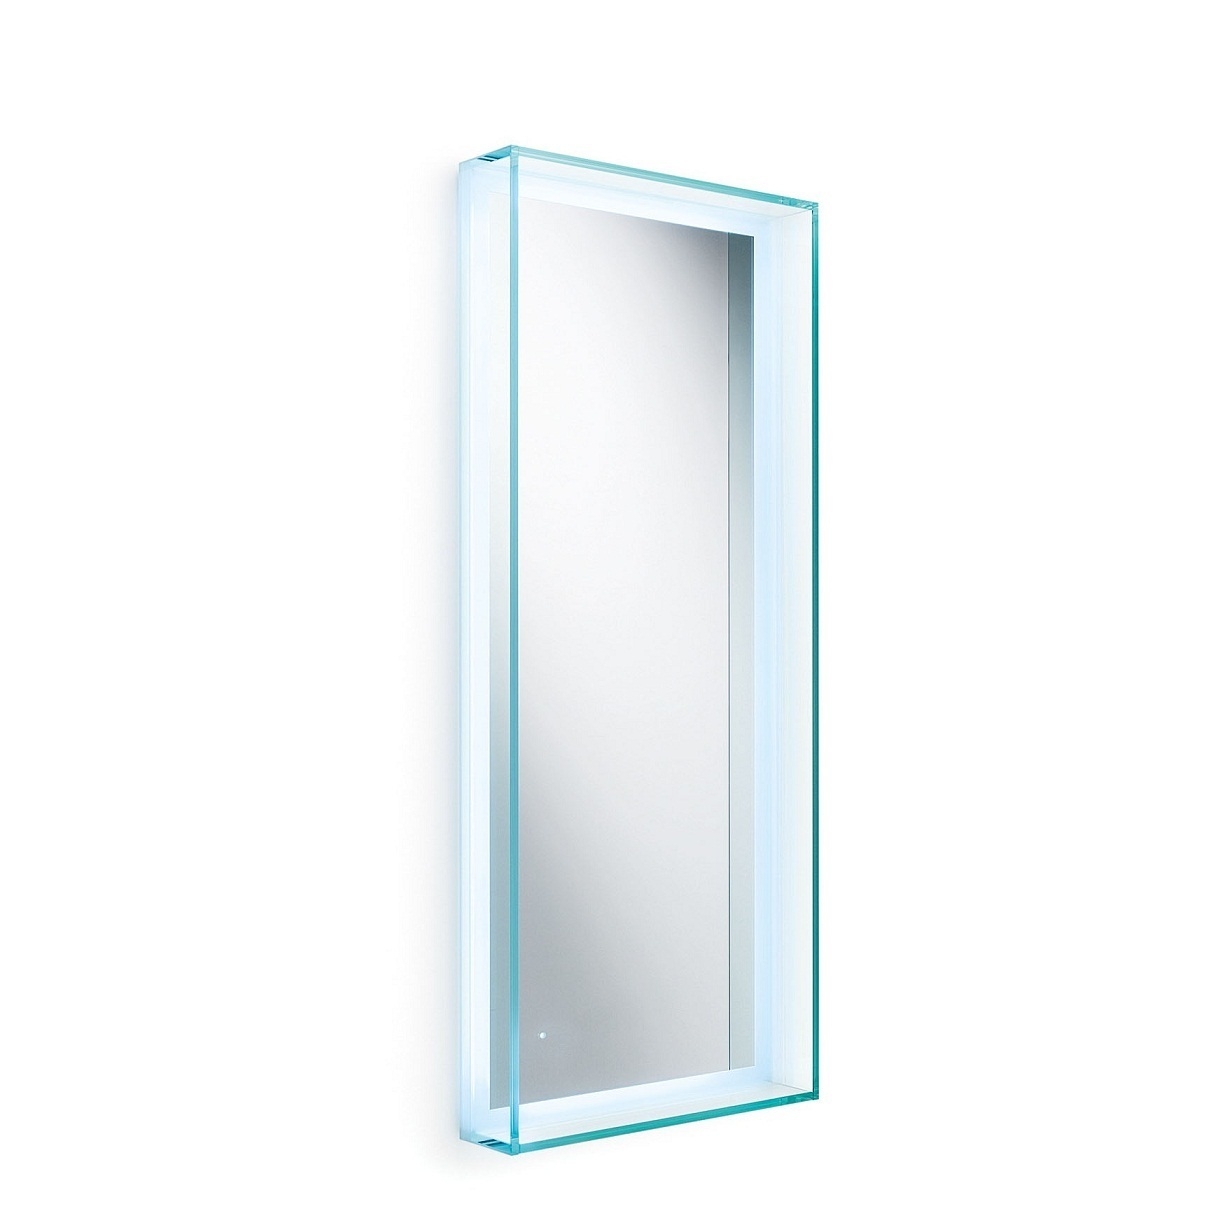 Speci 5681 mirror w glass frame LED light